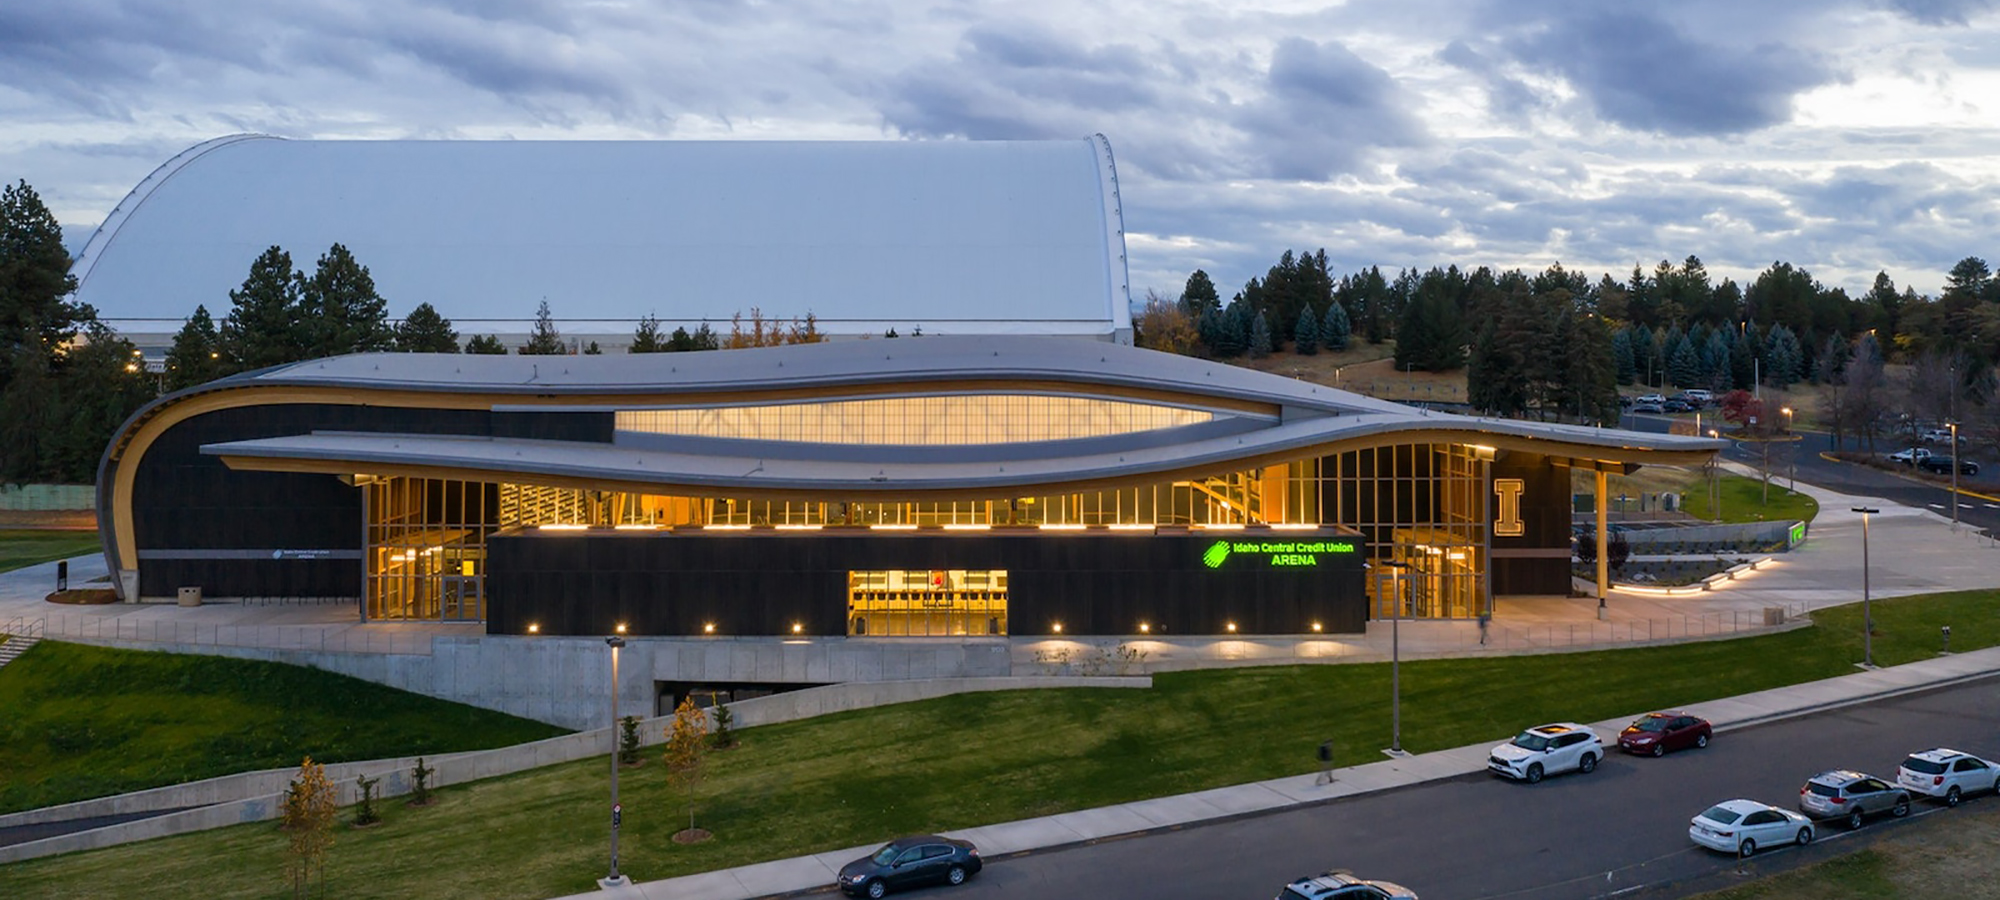 Idaho Central Credit Union Arena - Sportarena in Massivbauweise mit großer Spannweite